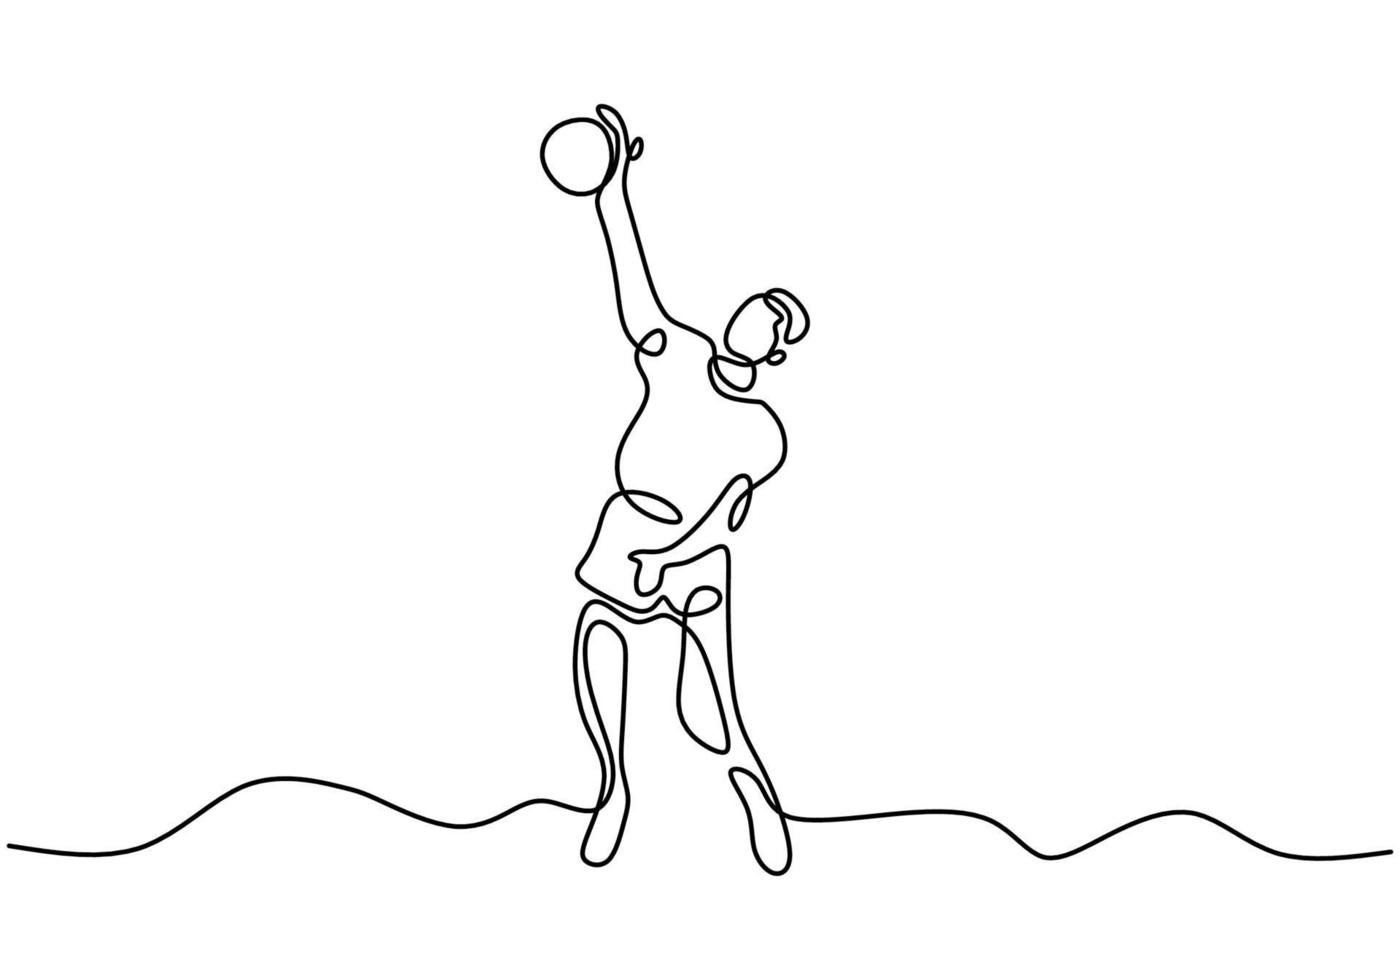 fortlaufende Strichzeichnung des jungen energischen männlichen Volleyballspielers in der Aktionsspringspitze auf dem Platz. professioneller Mann springt, um den Ball zu werfen. minimalistisches Design der Vektorillustration vektor